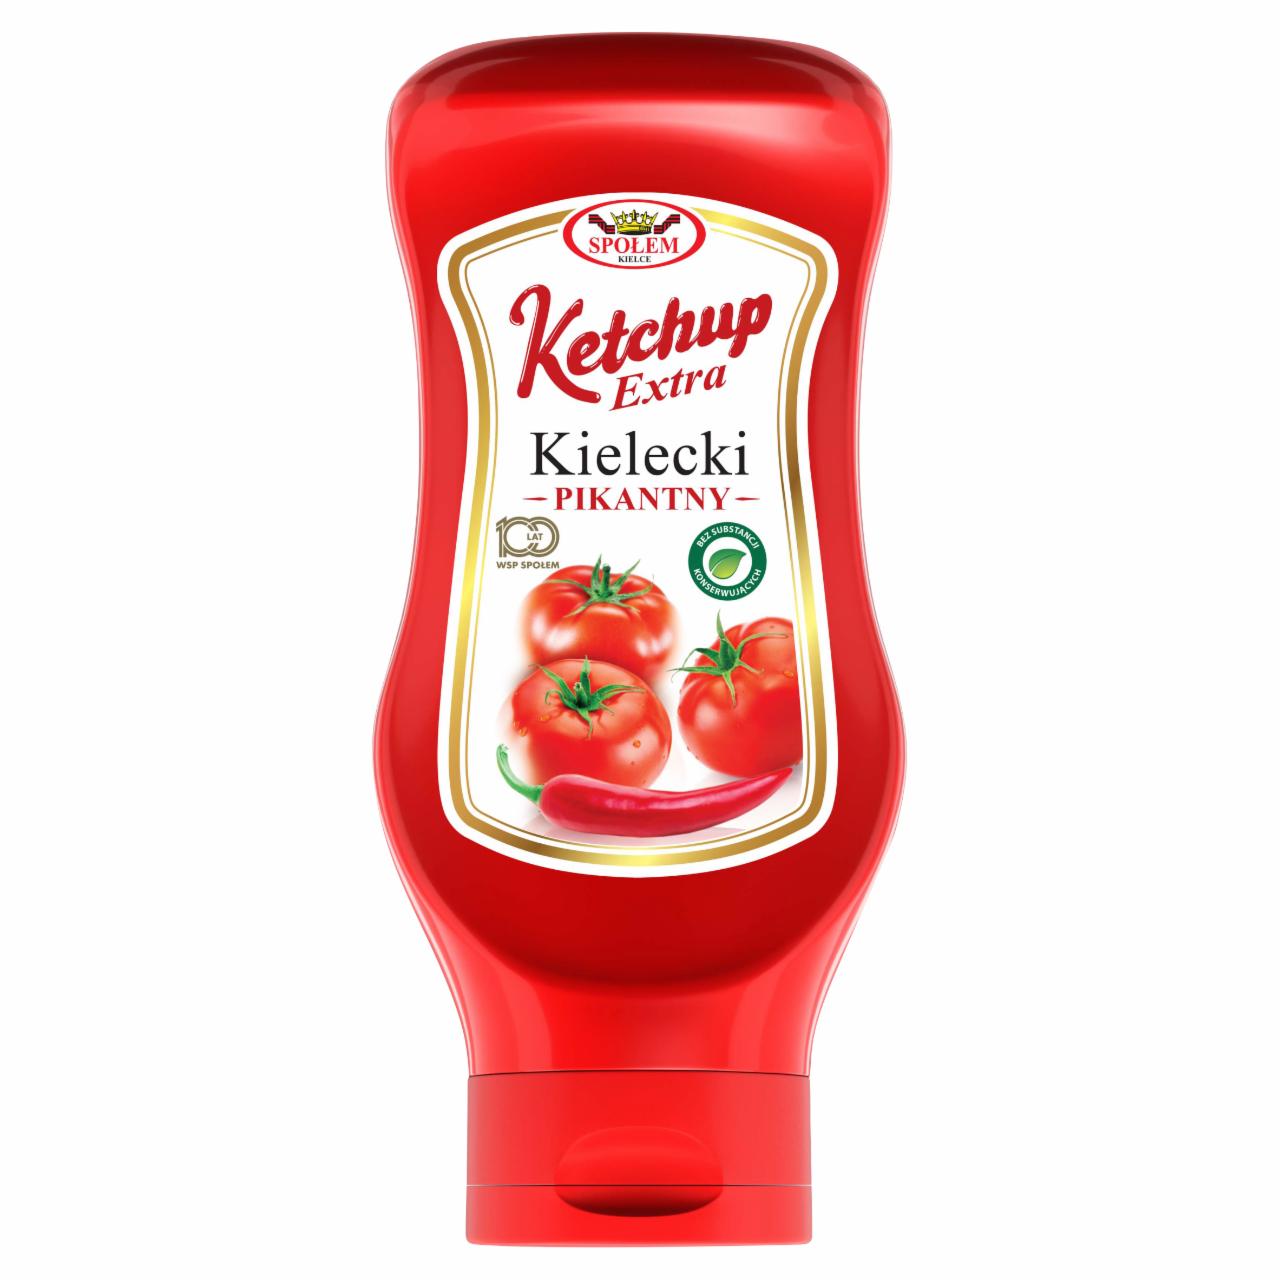 Zdjęcia - Ketchup Kielecki extra pikantny 500 g